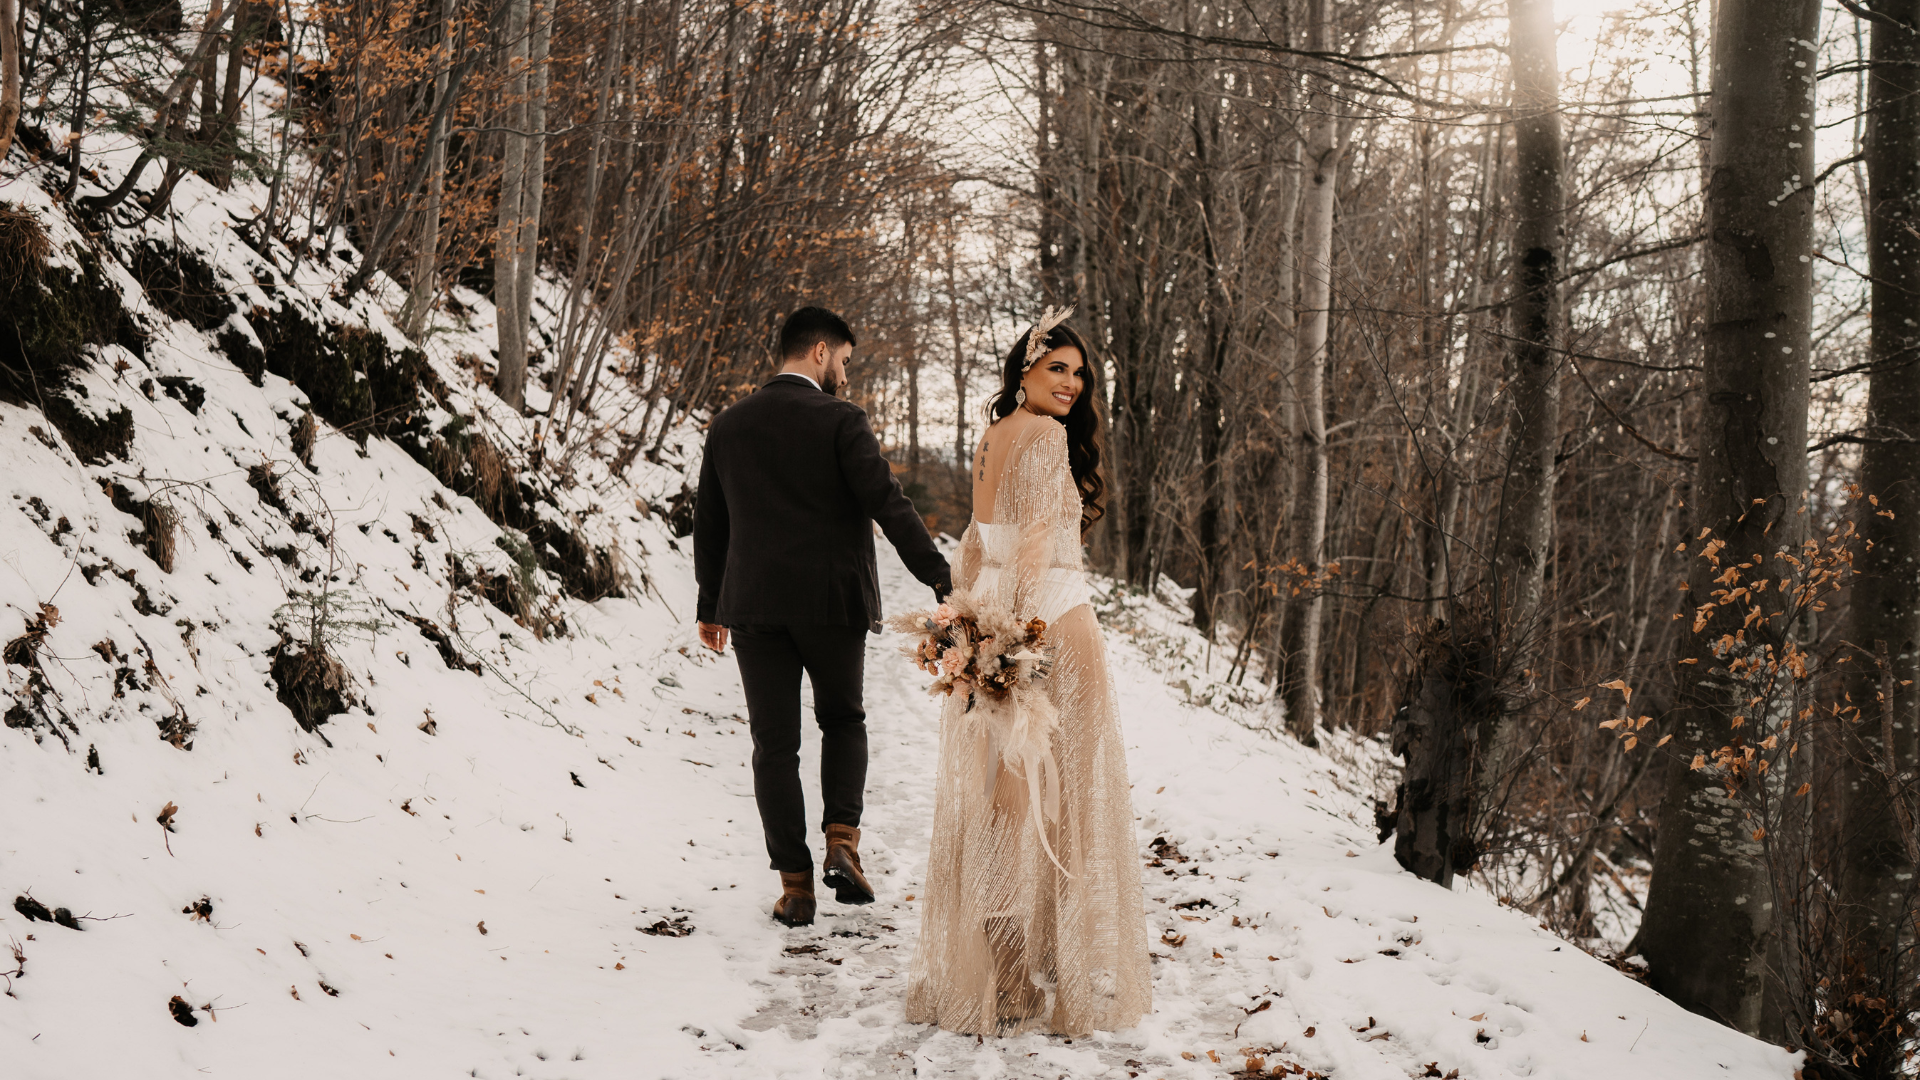 Les jeunes mariés marchent sur un chemin enneigé en hiver